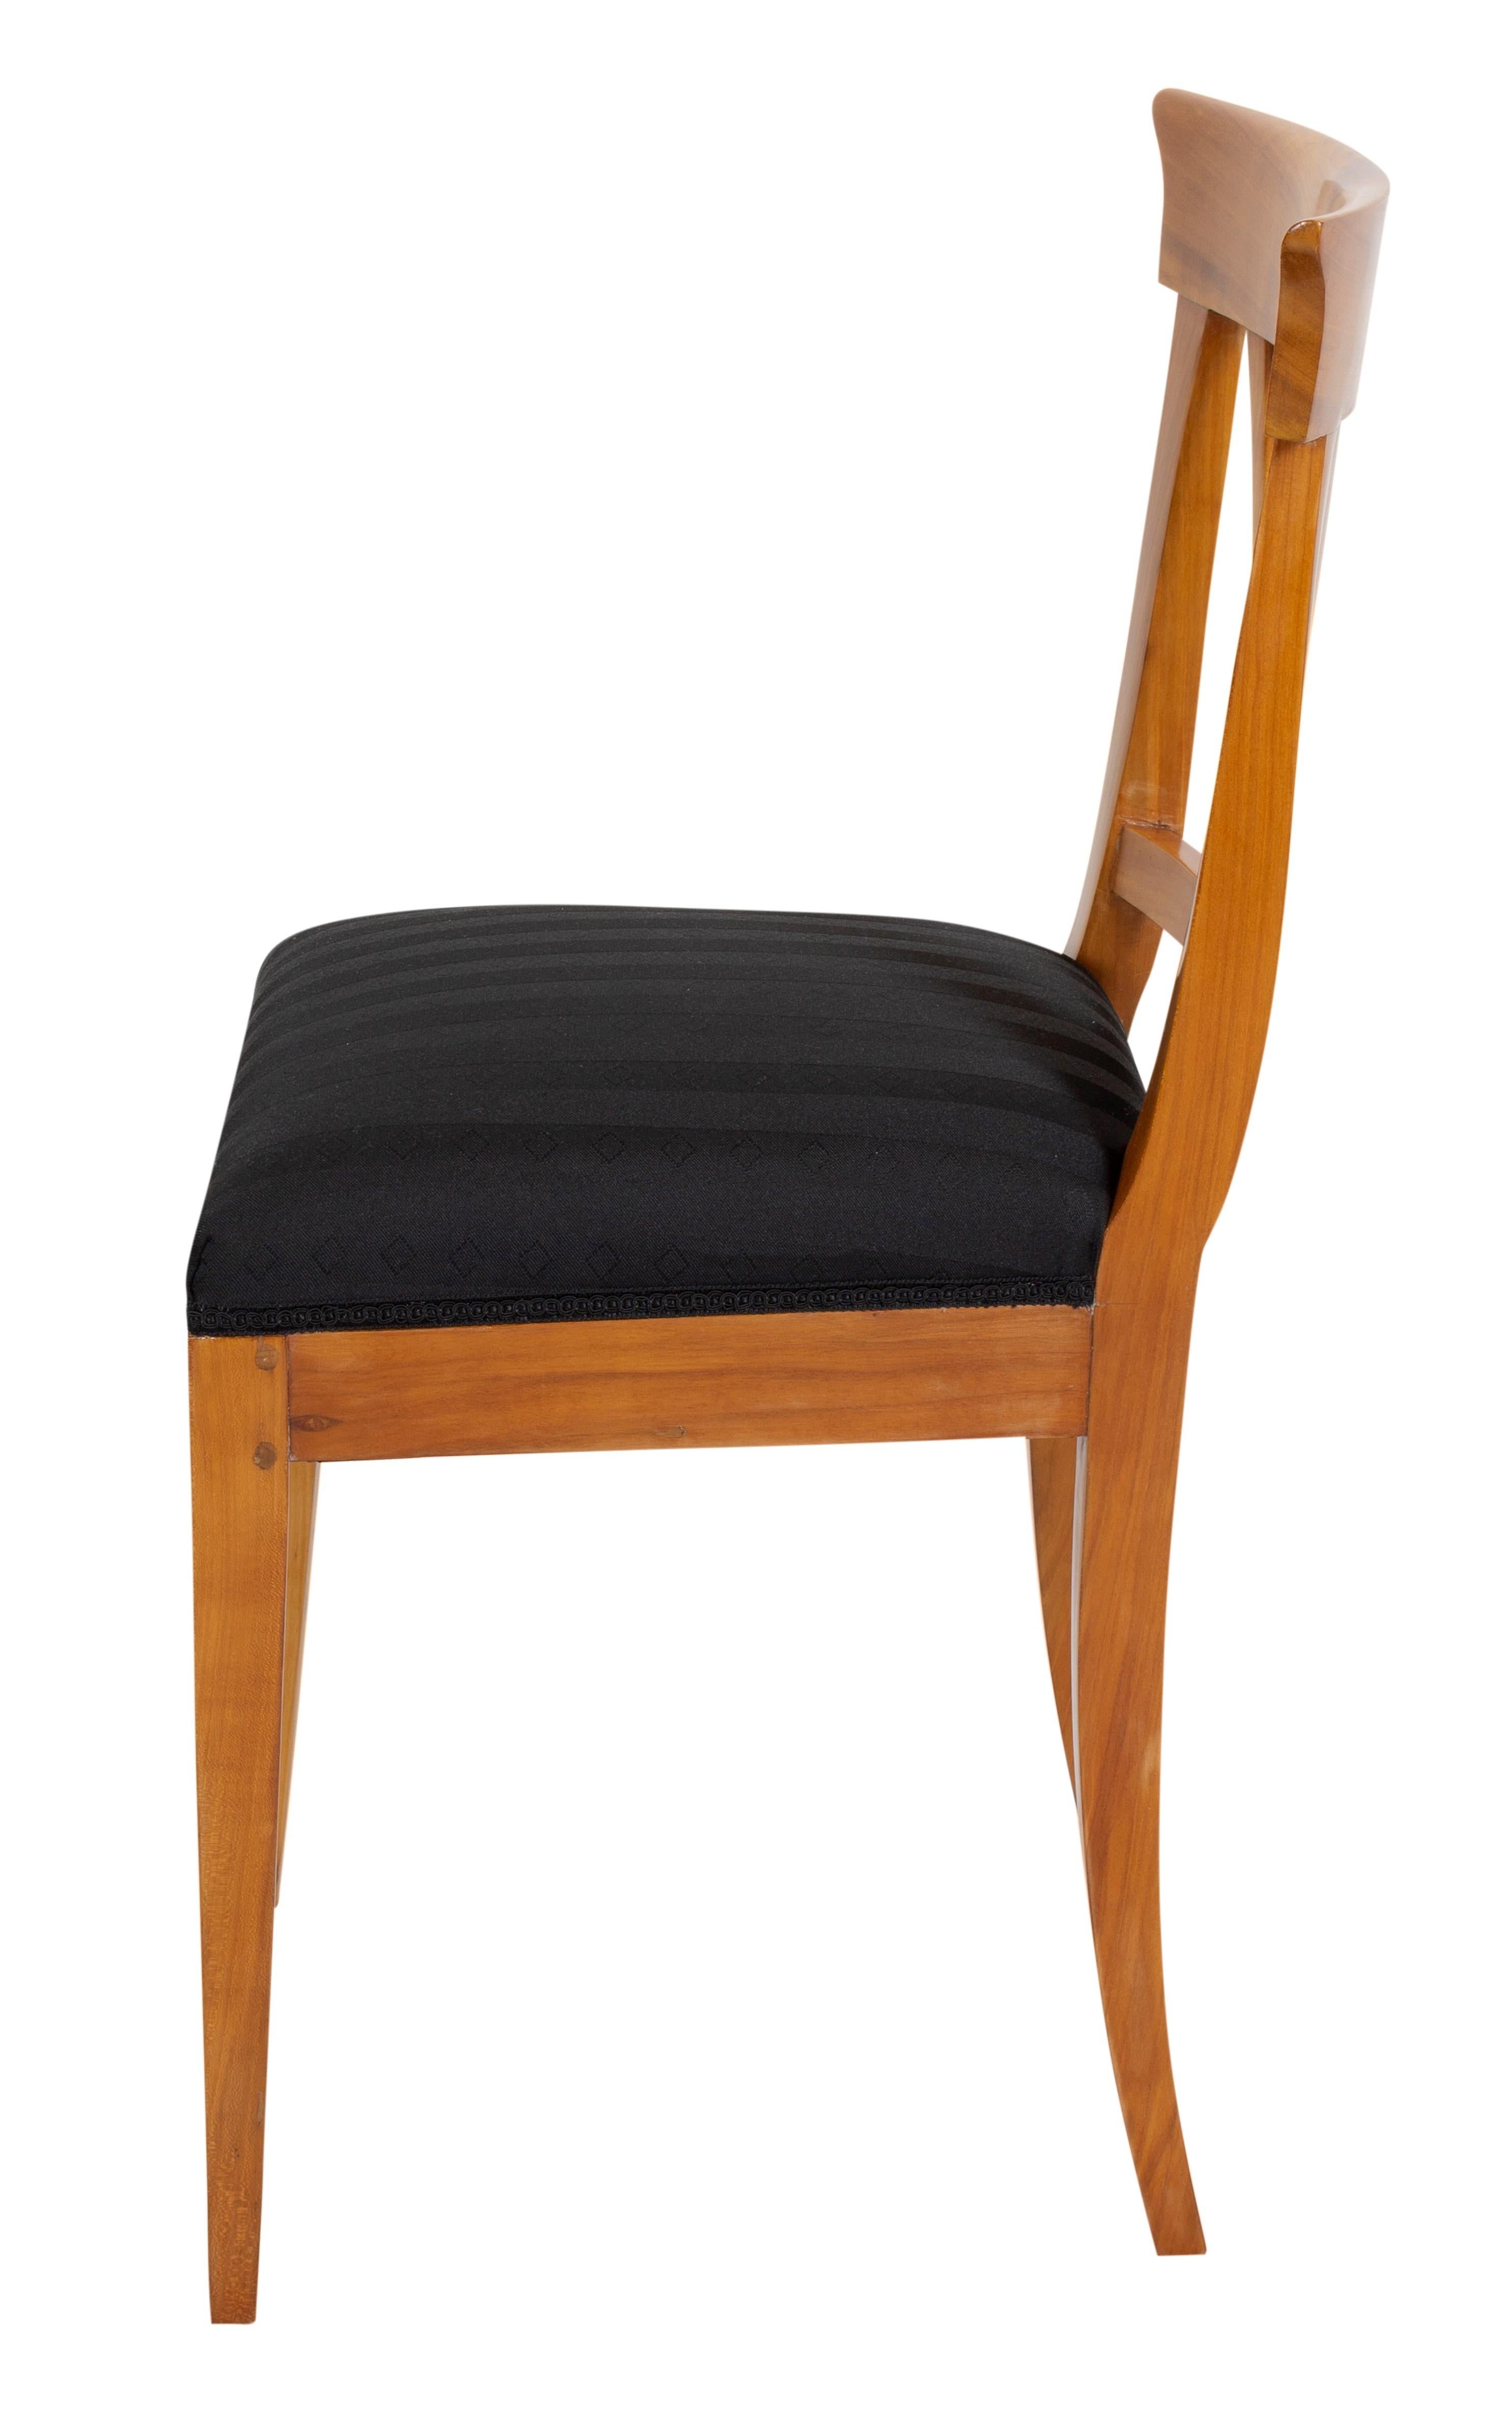 Ein Stuhl aus der Zeit des Biedermeier, um 1830. Der Stuhl ist aus massivem Kirschholz gefertigt. Der Stuhl ist neu gepolstert, mit Riemen und Federn versehen und mit neuem Stoff bezogen.
In sehr gutem restauriertem Zustand.